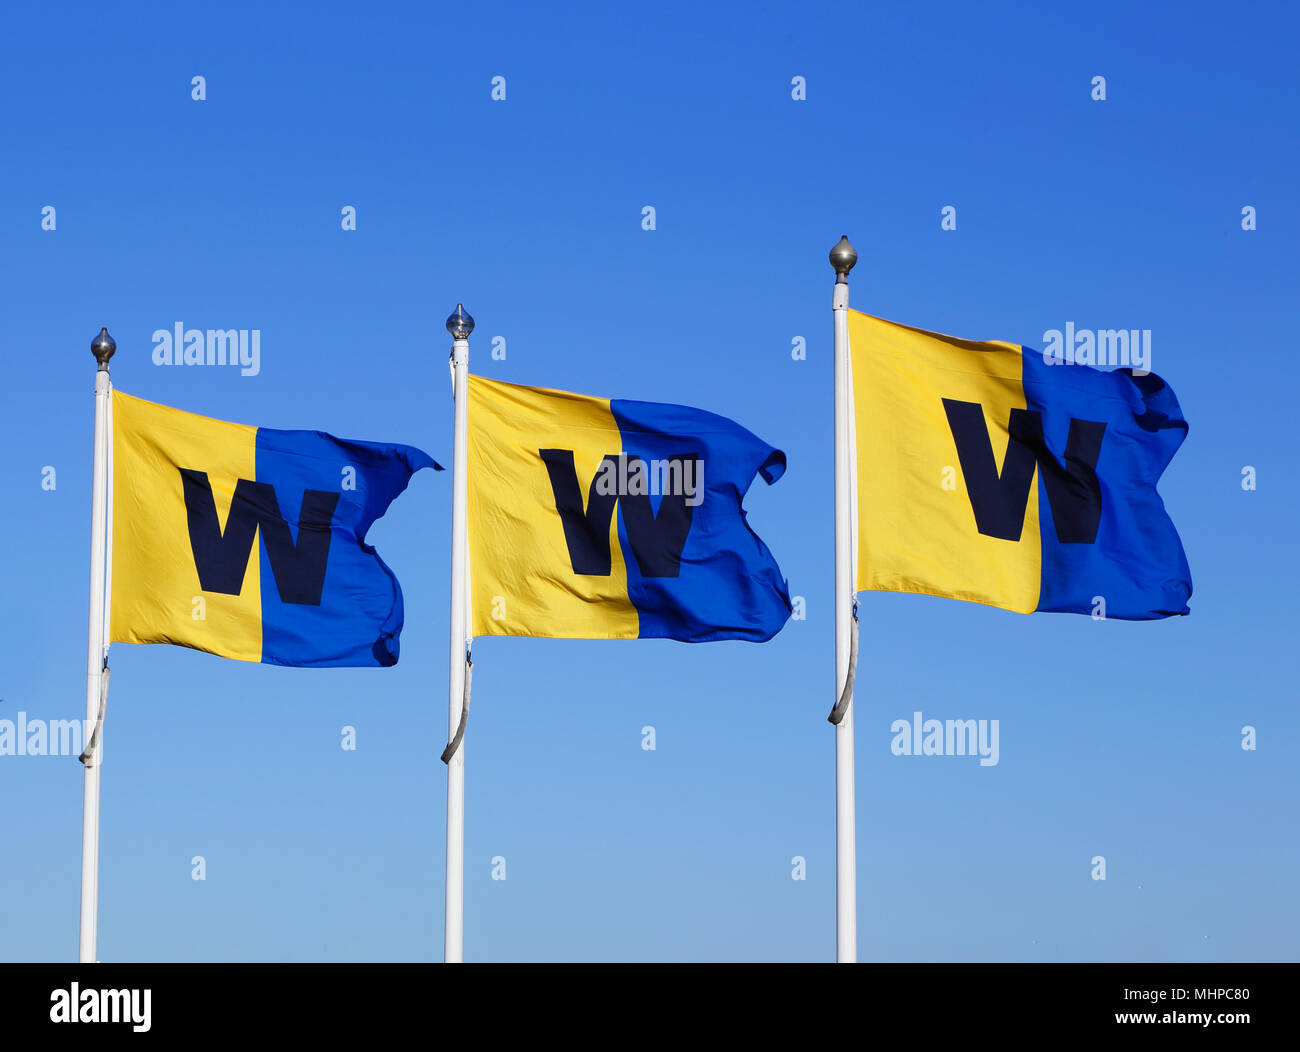 Stockholm, Suède - 22 Avril 2014 : l'archipel de Stockholm boat service société Waxholmsbolaget drapeaux contre un ciel bleu à Sluusen à Stockholm. Banque D'Images